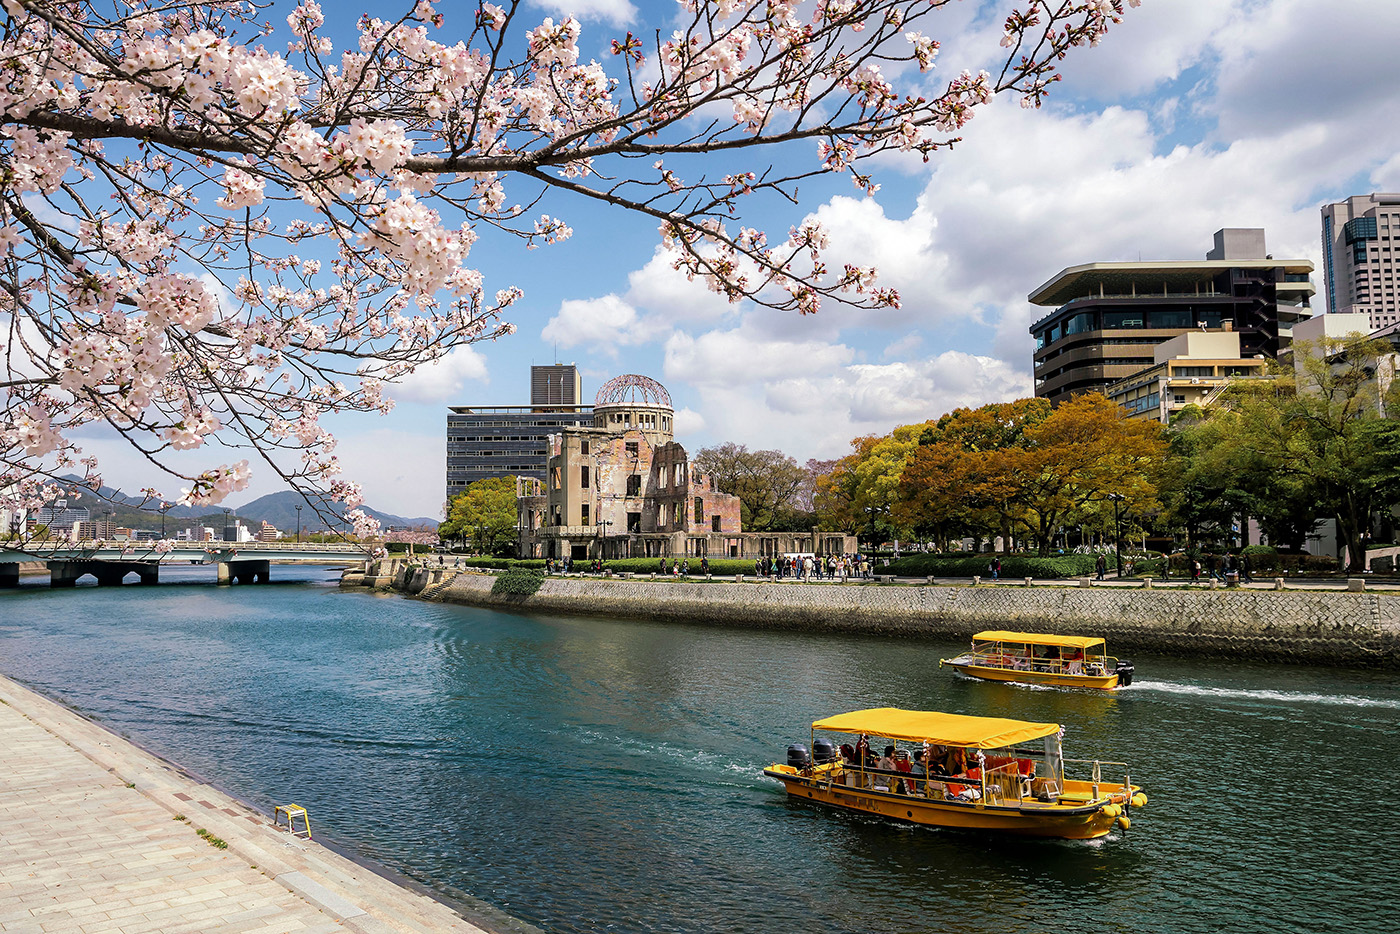 神戸の桜は、広島原爆ドームの存在感に柔らかさを添え、素朴ながら考えさせられる風景を生み出しています